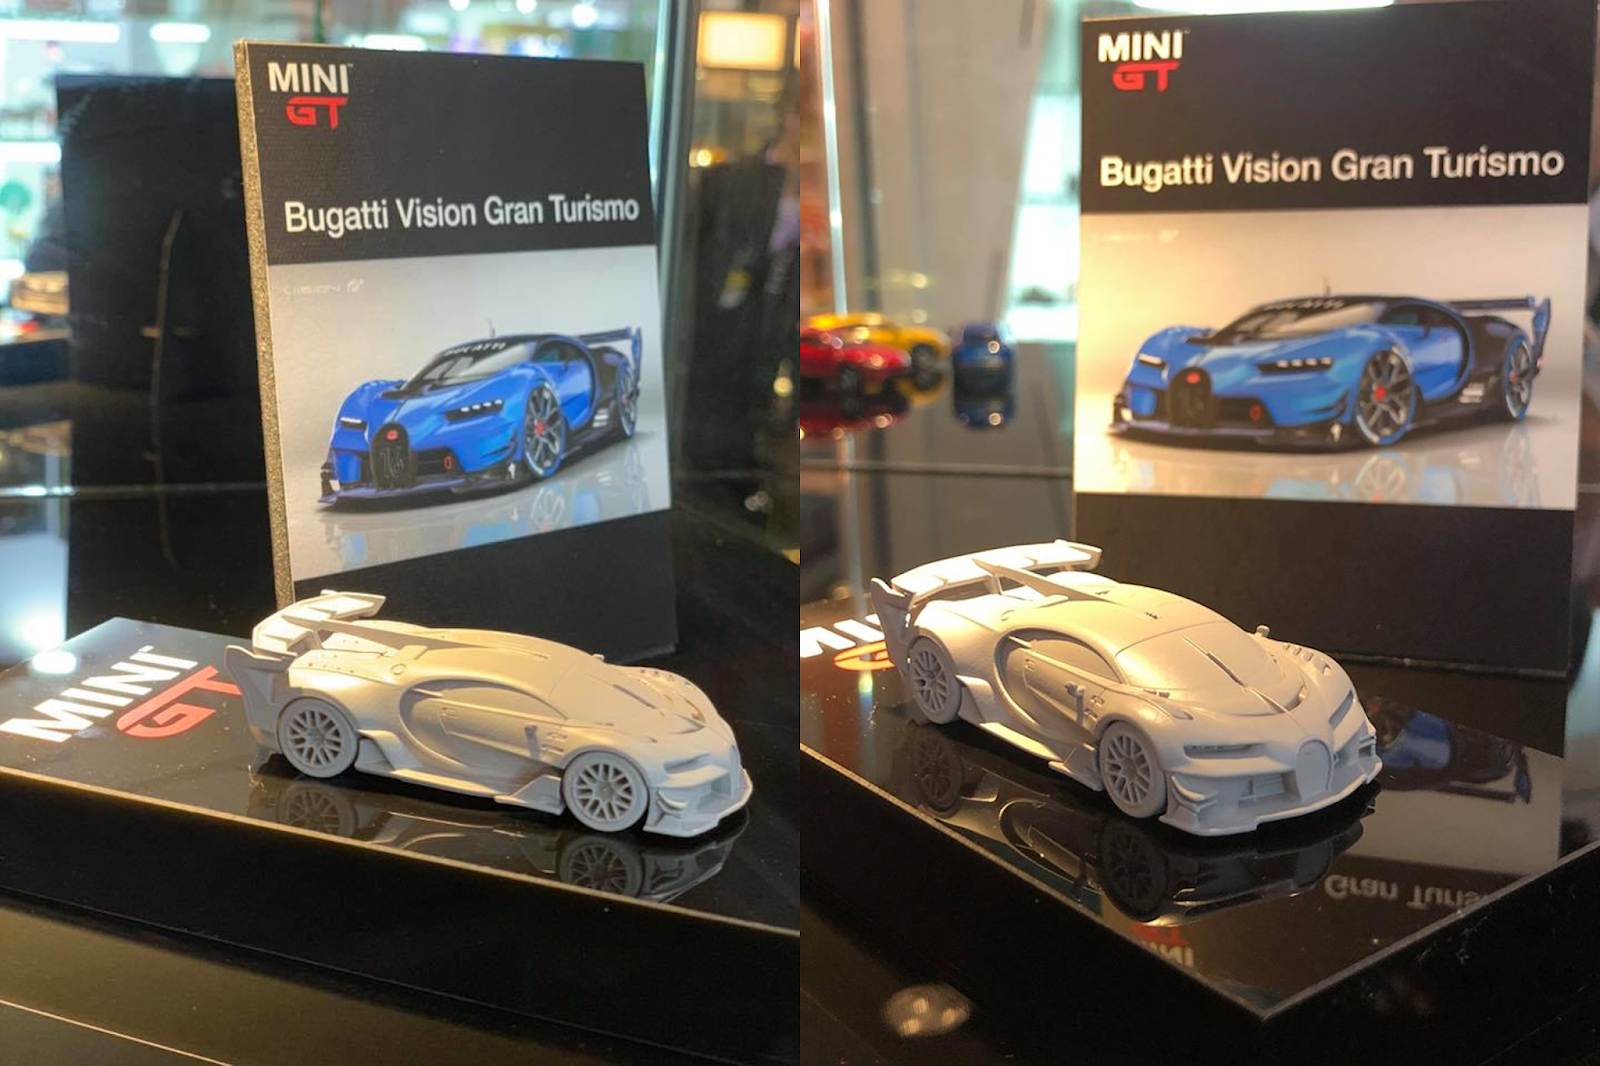 La Bugatti Vision Gran Turismo s'annonce chez Mini GT au 1